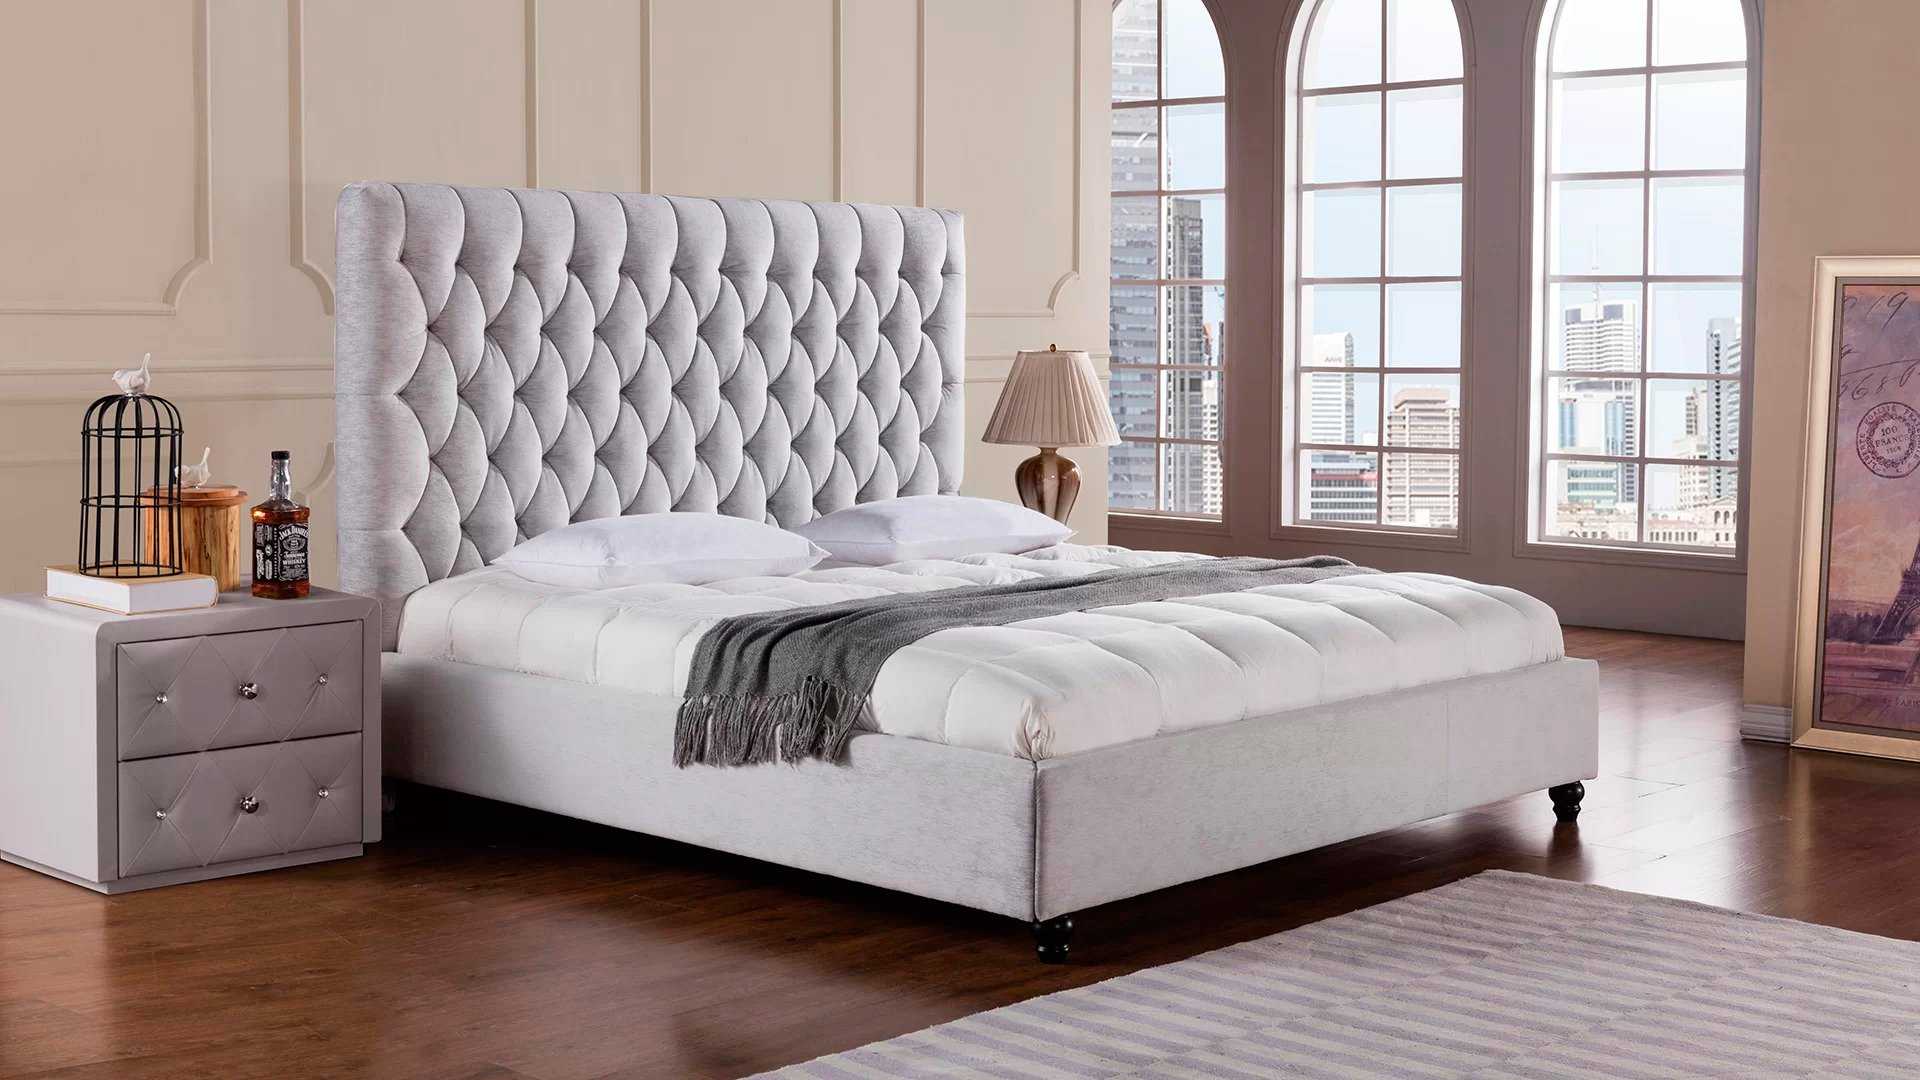 Кровати с мягким изголовьем: фото, виды, материалы, дизайн, стили, цветовая гамма